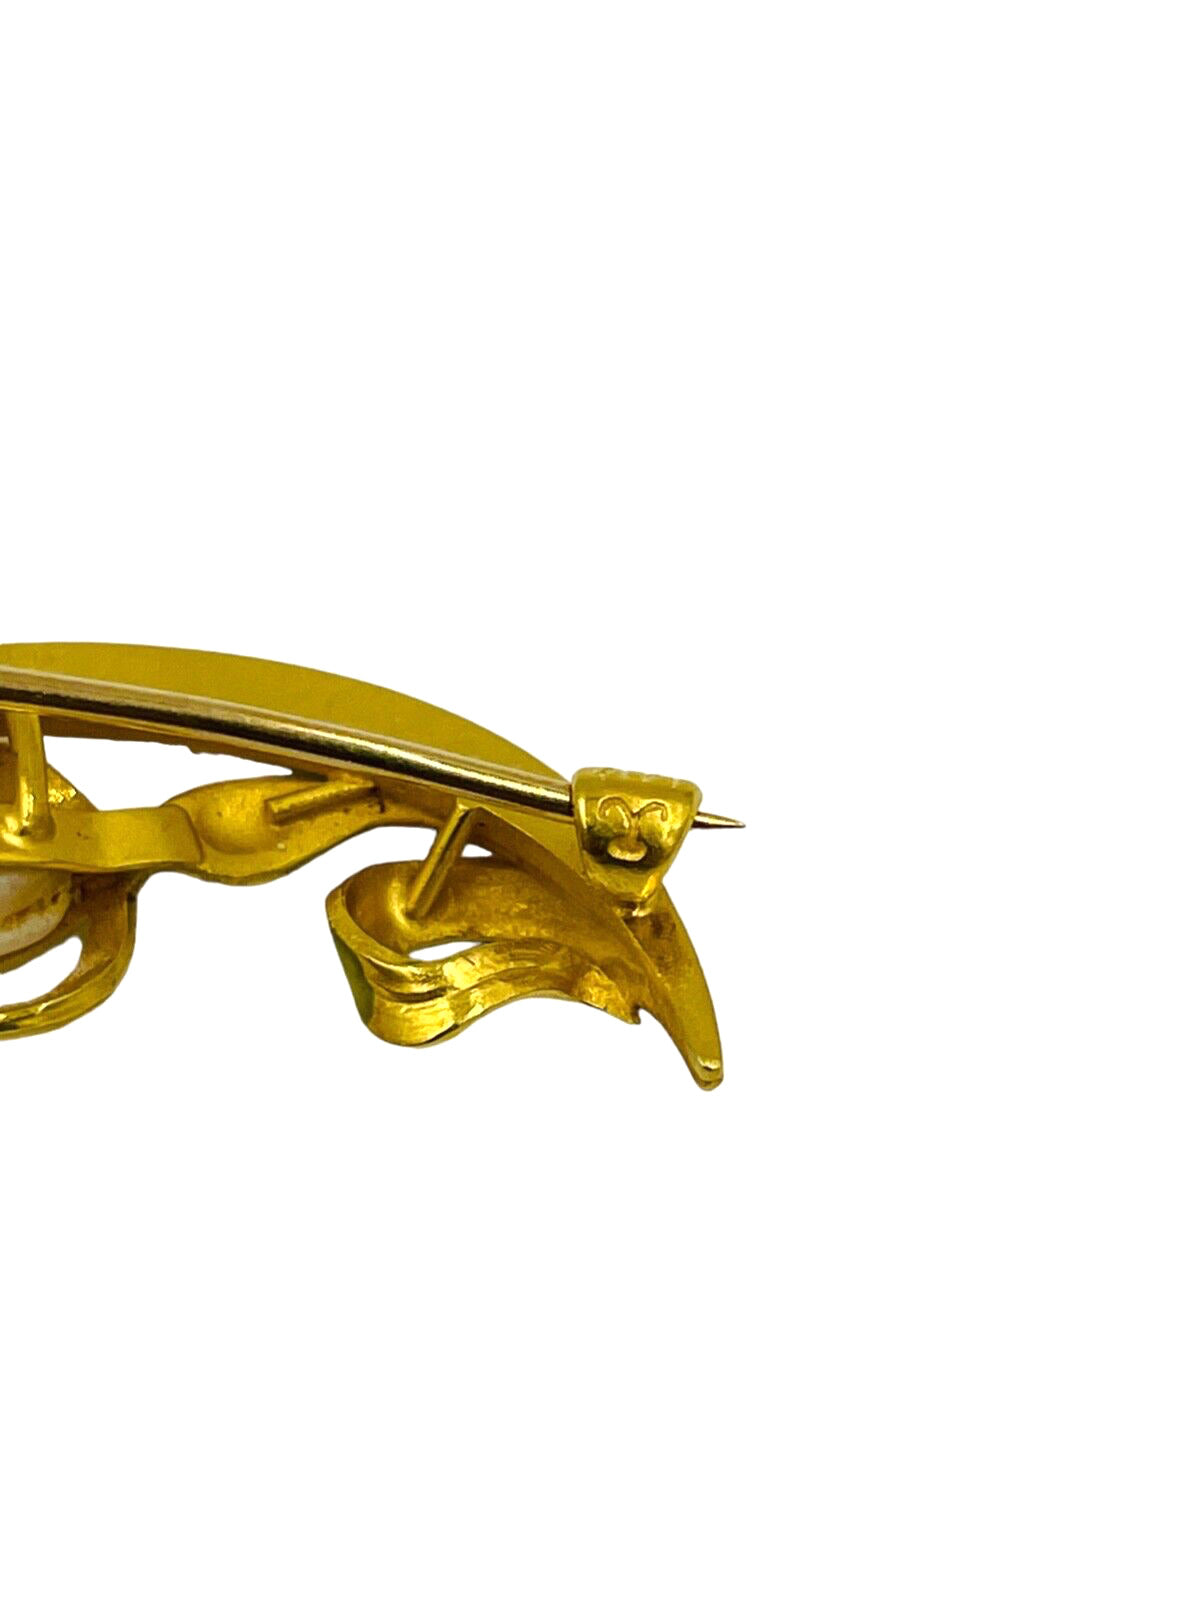 Antique Krementz 14K Yellow Gold Enamel Pearl Flower Pin Brooch Art Nouveau